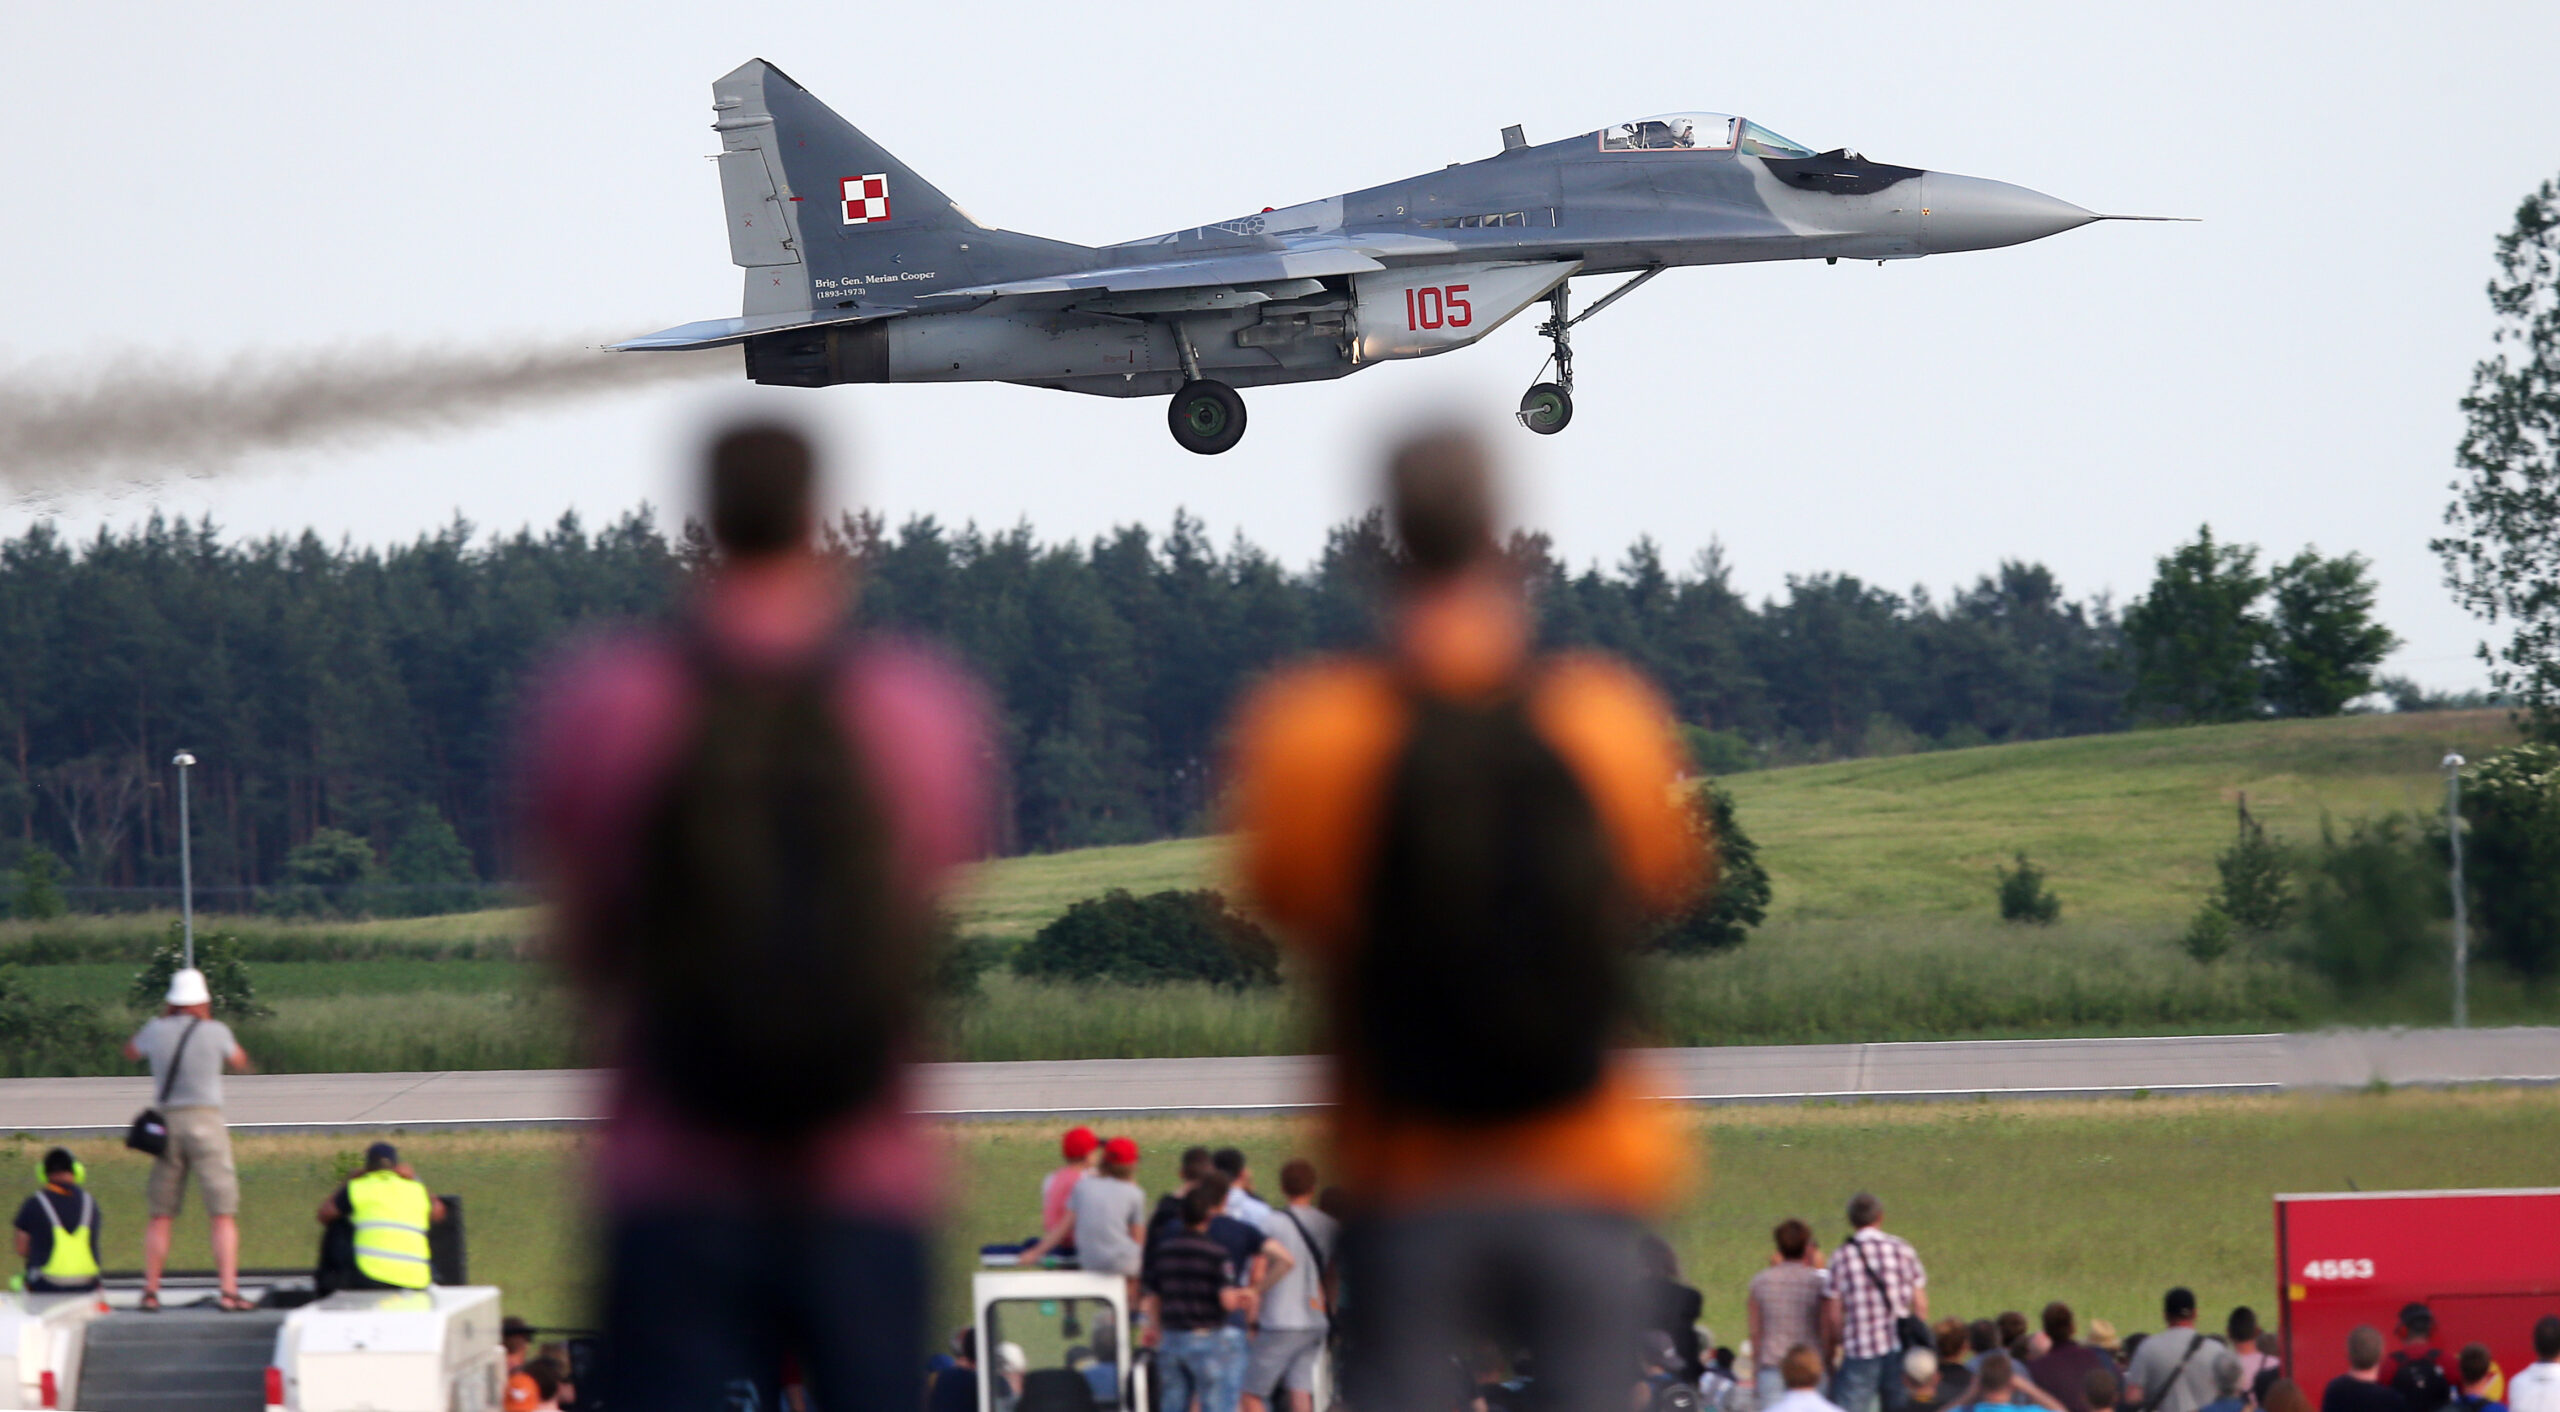 Eddy na polskich samolotach bojowych – szybkie spojrzenie na obecną sytuację wojenną